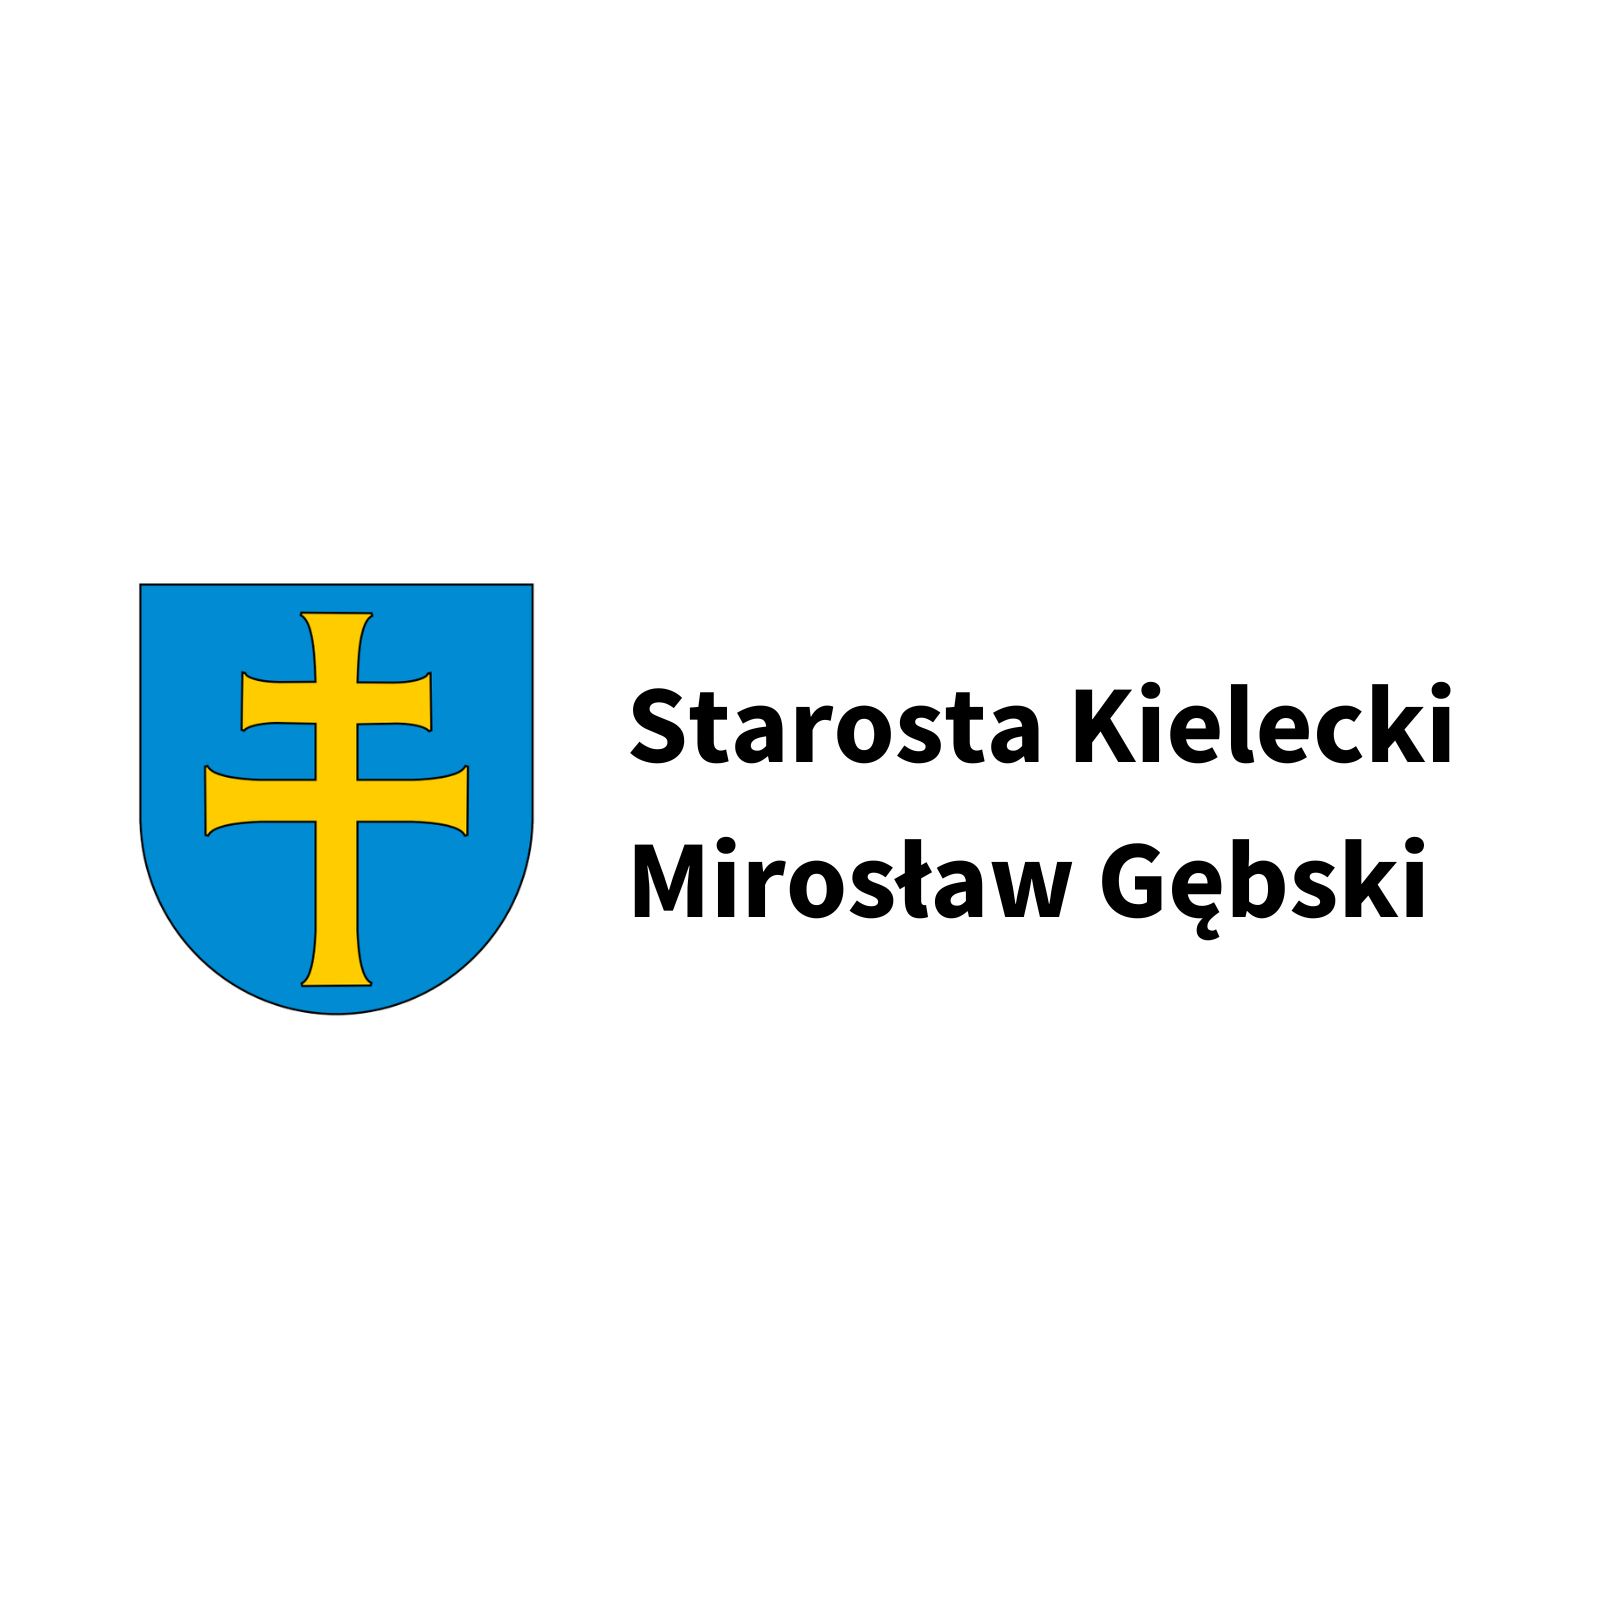 Starosta Kielecki Mirosław Gębski